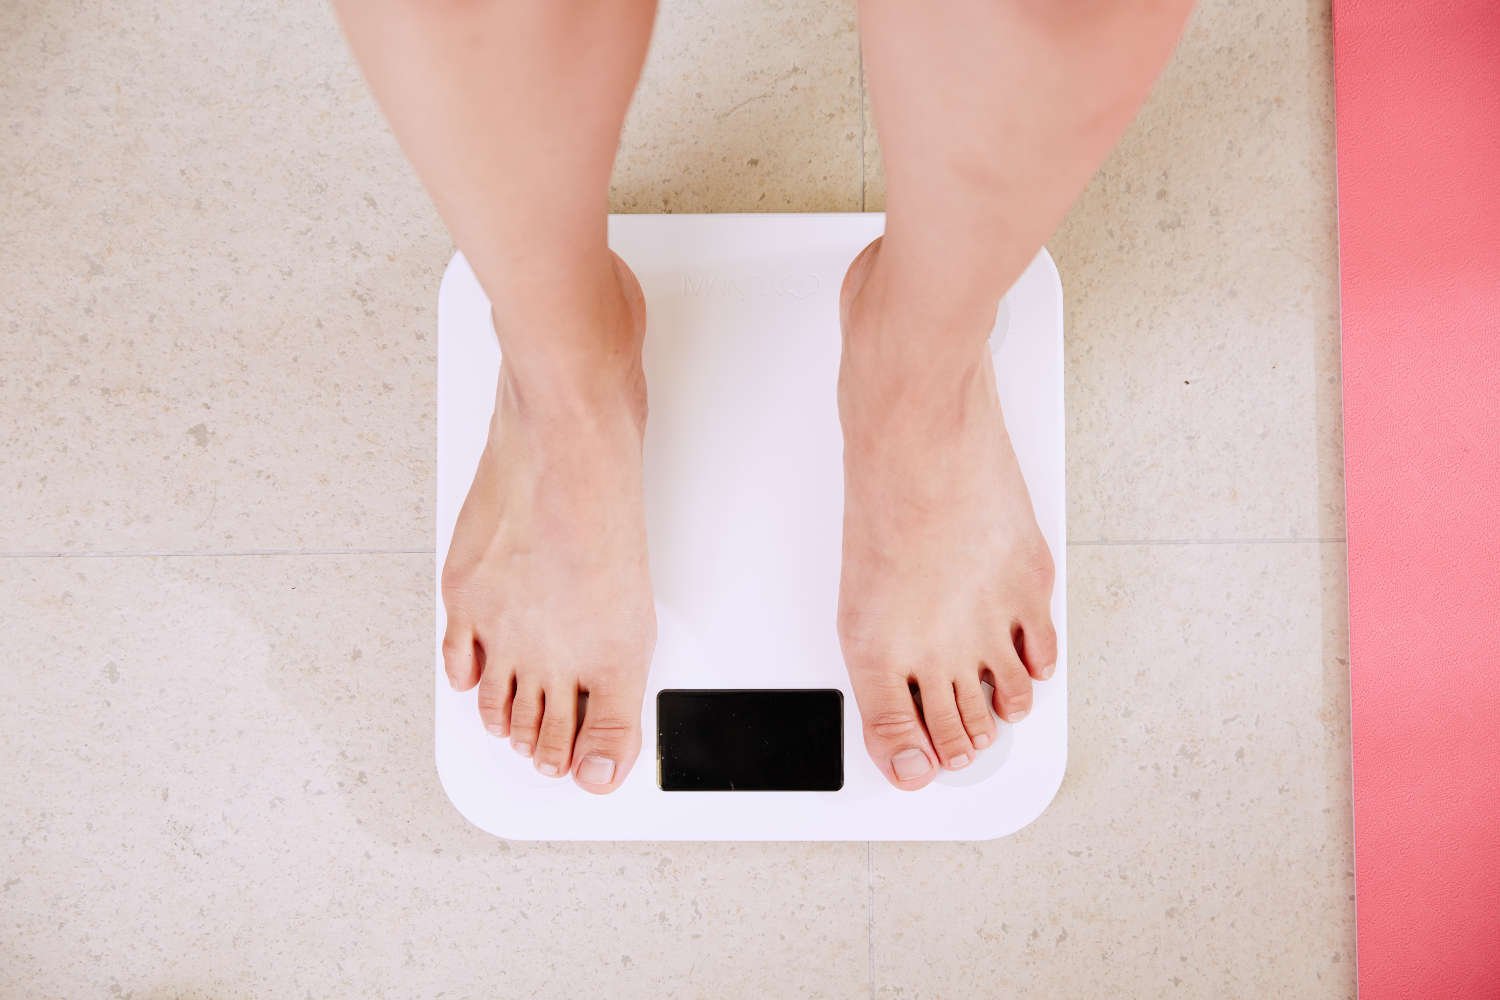 jaunatviškumas sveikas kūno svorio metimas pak